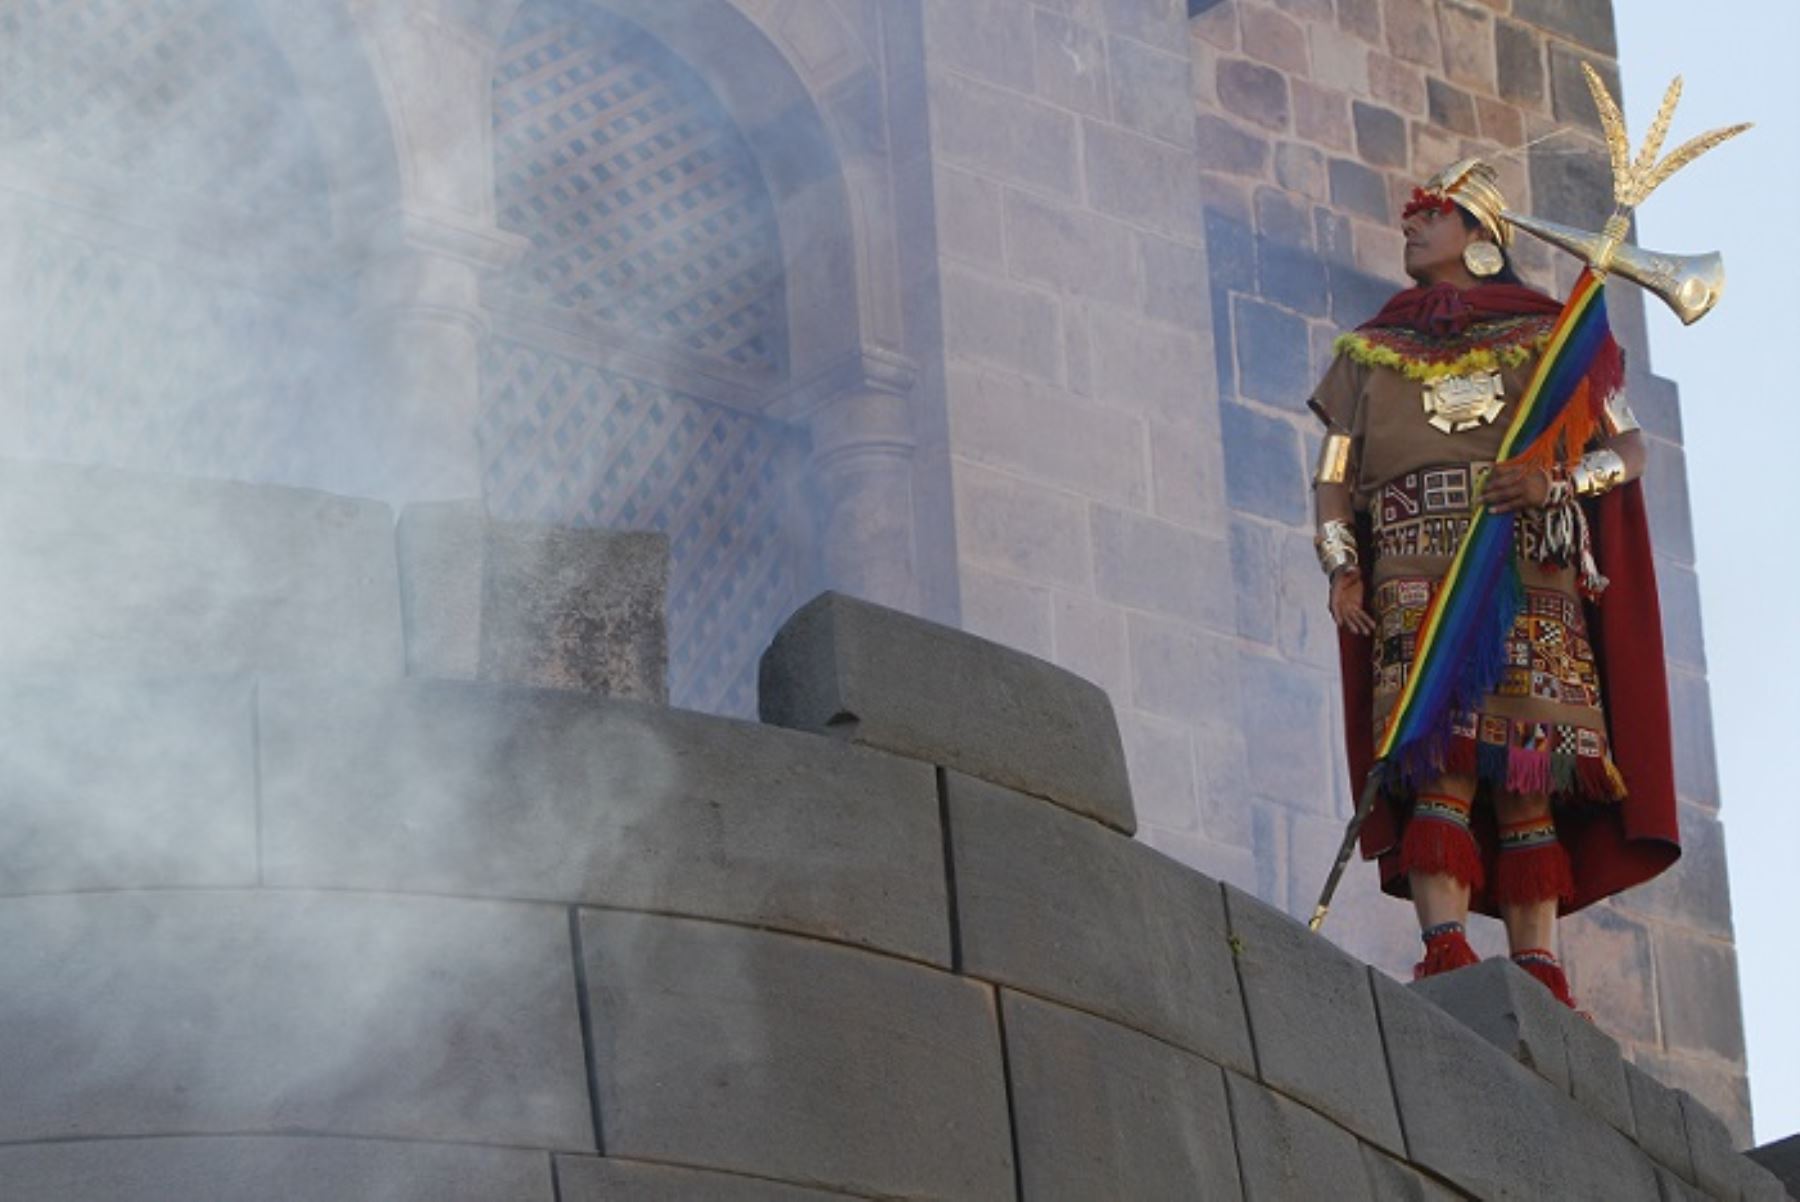 Con ceremonia de Saludo al Sol se inicia la escenificación del Inti Raymi en Cusco. ANDINA/Percy Hurtado